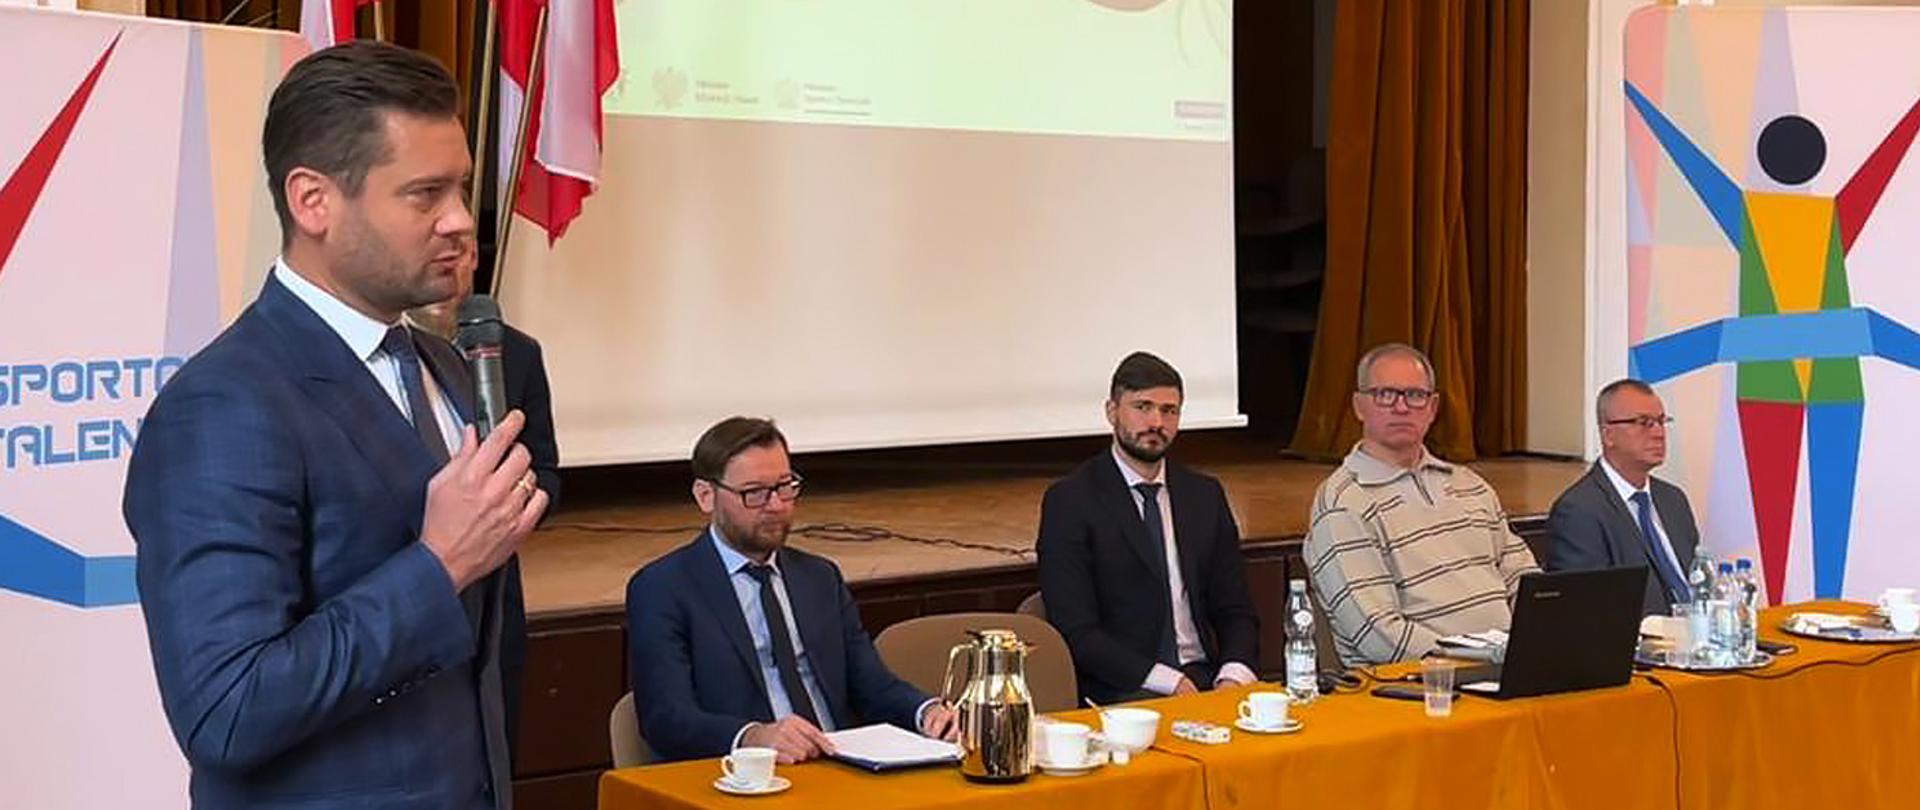 Minister Kamil Bortniczuk na spotkaniu z nauczycielami w Opolu - program Sportowe Talenty; minister stoi z mikrofonem, w tle stół przy którym siedzą prelegenci